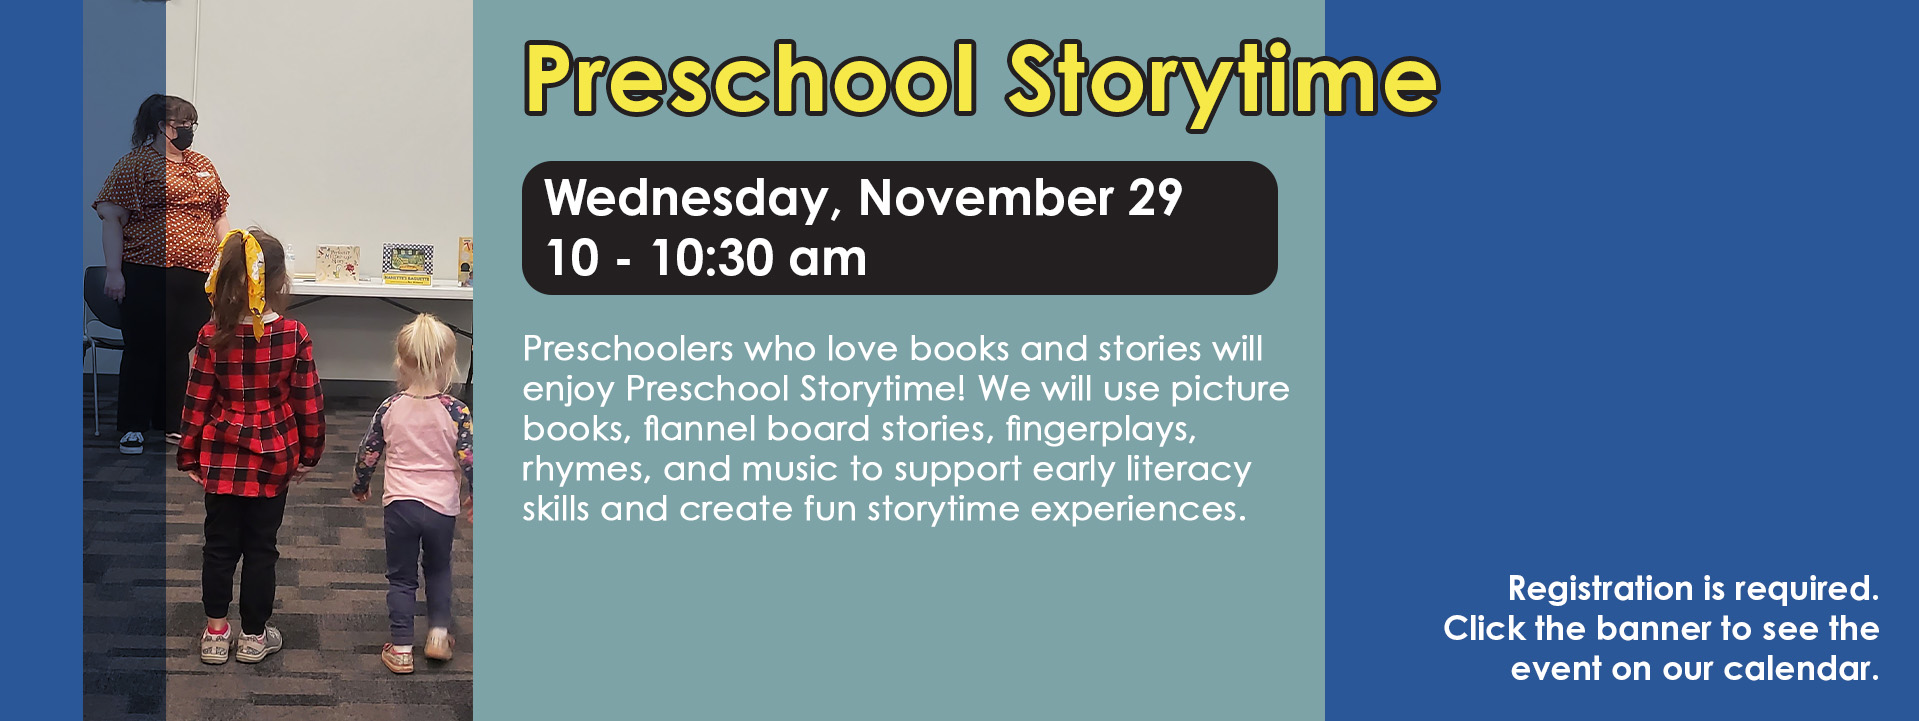 Preschool Storytime Nov 29